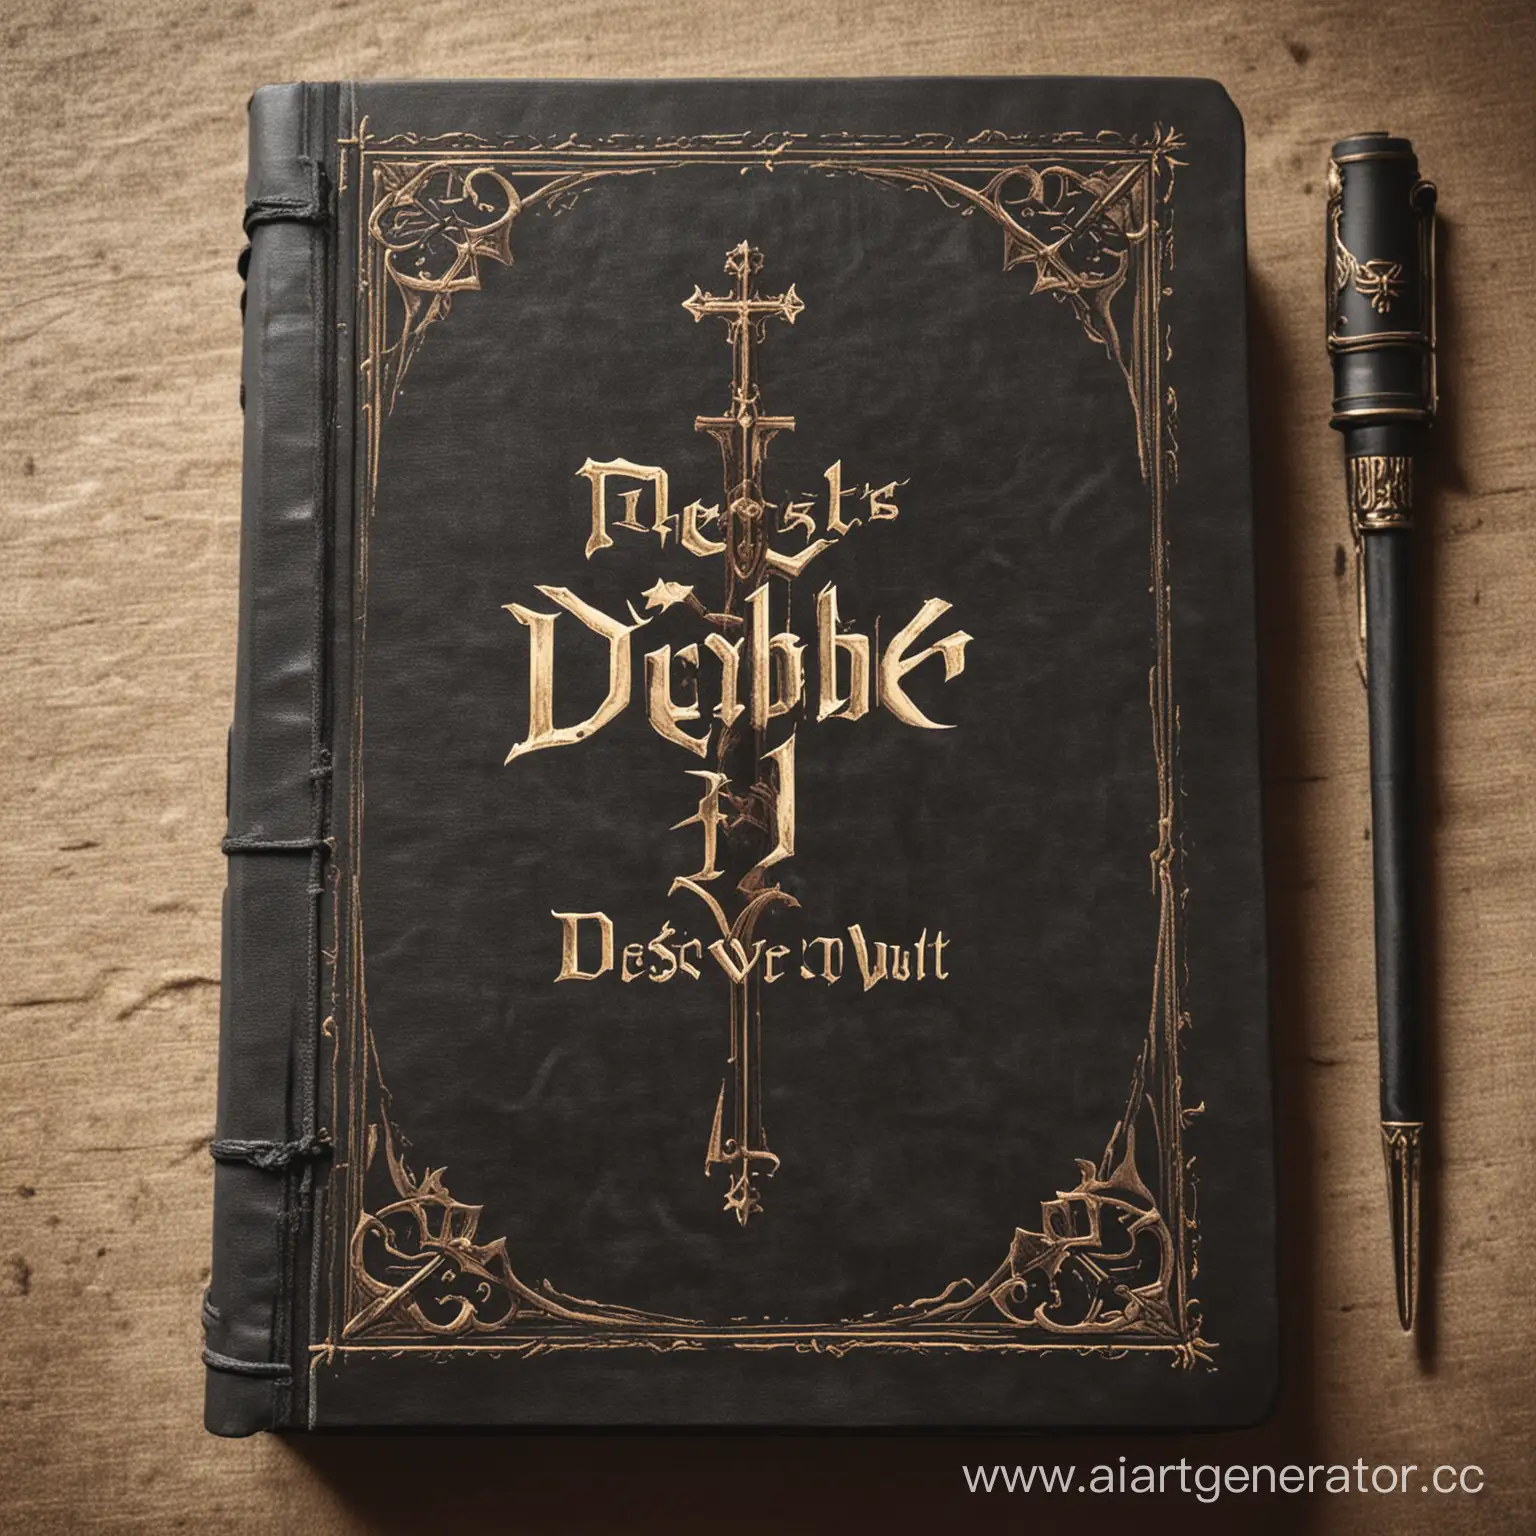 Обложка книги жреца "Библия" для игры в ДНД с надписью deus vult